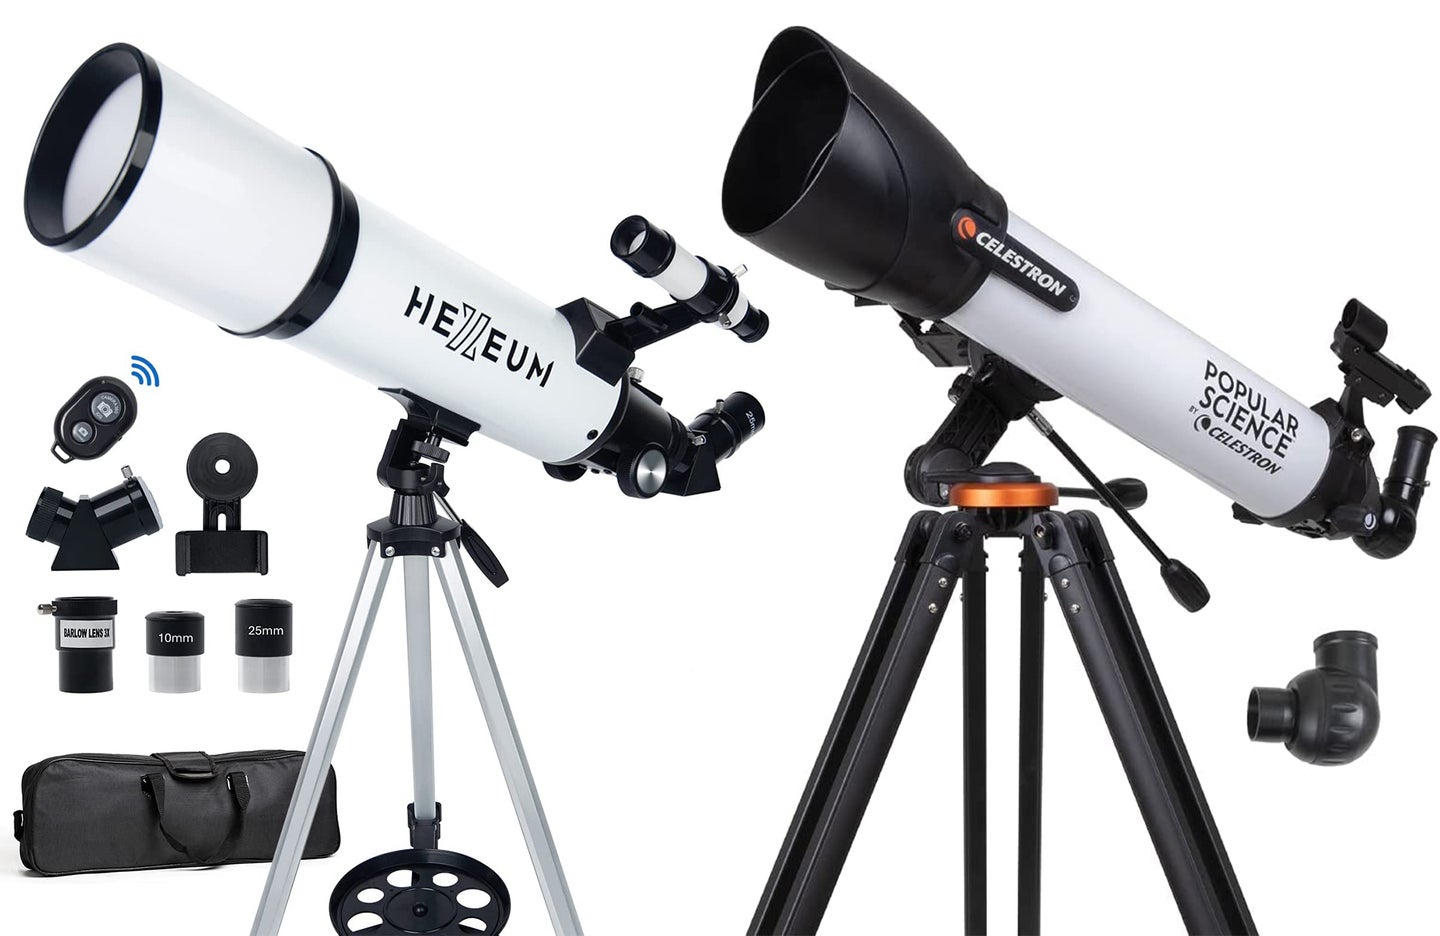 Celestron and Hexeum telescopes